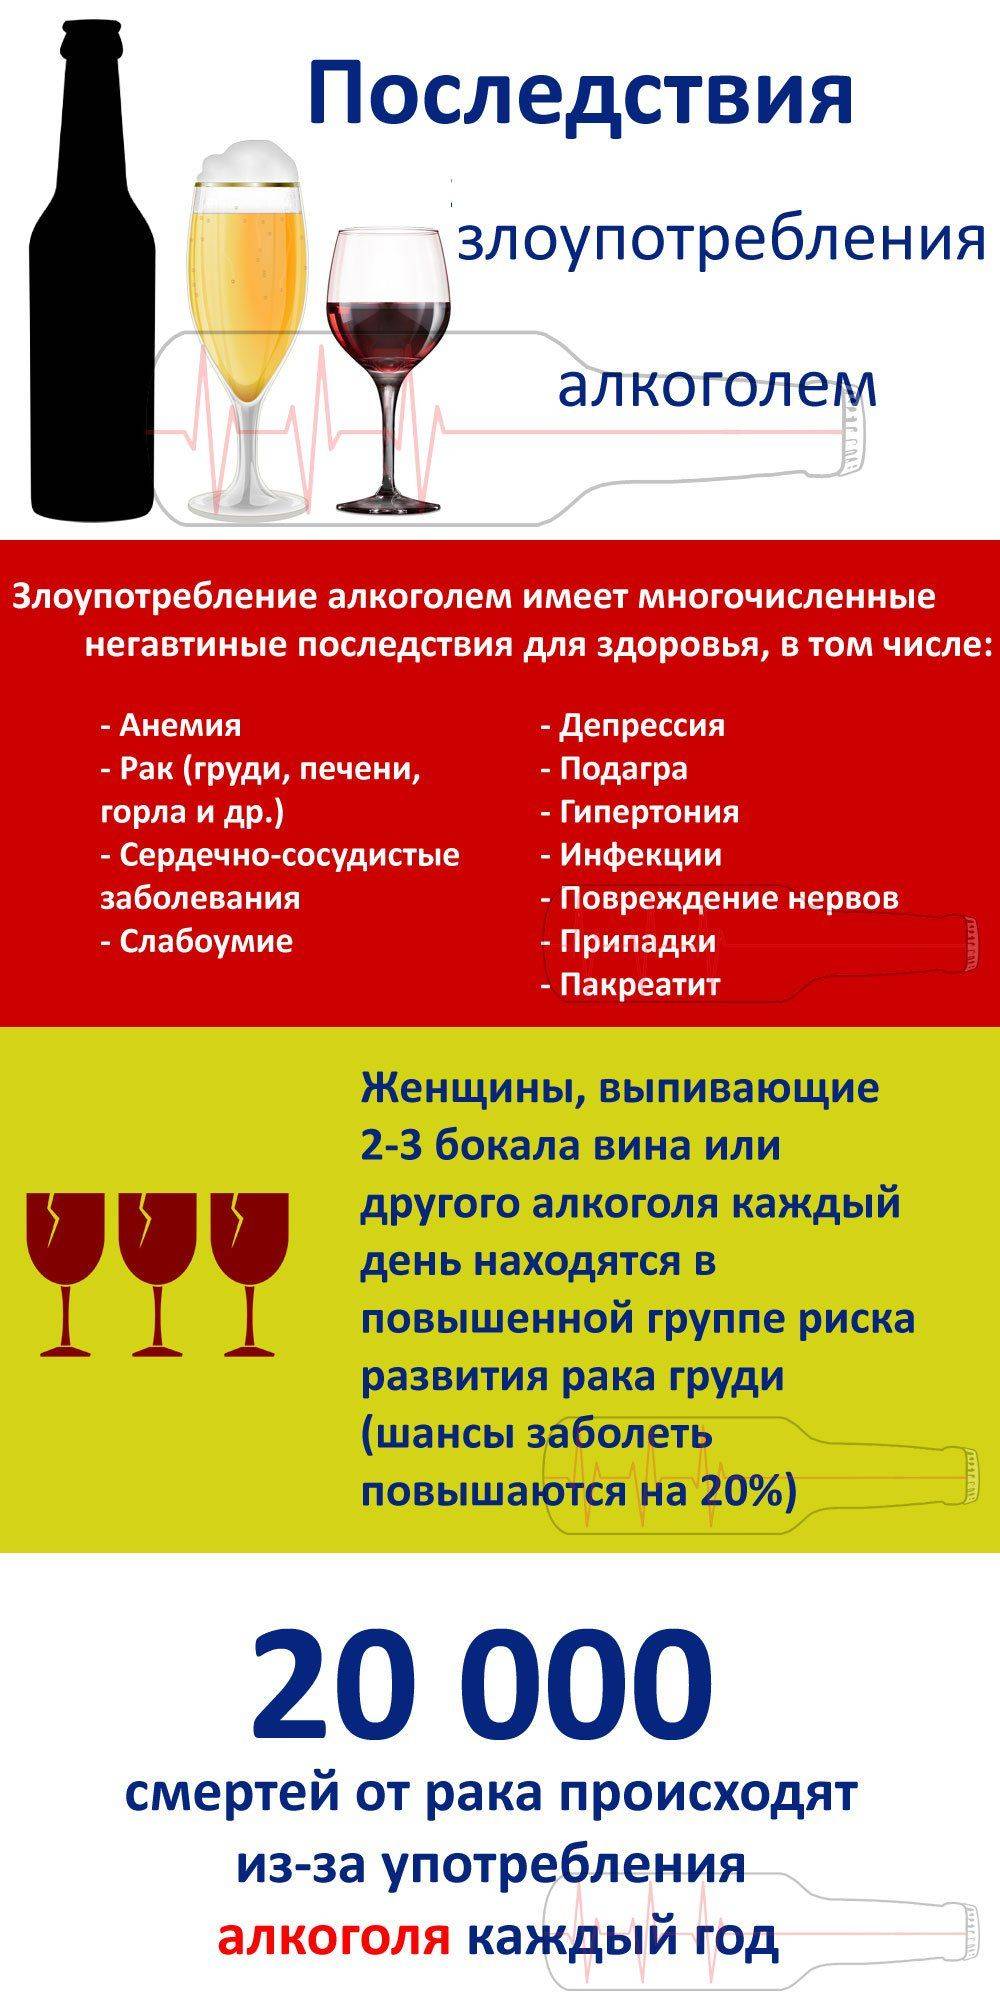 Инфографика: последствия злоупотребления алкоголем